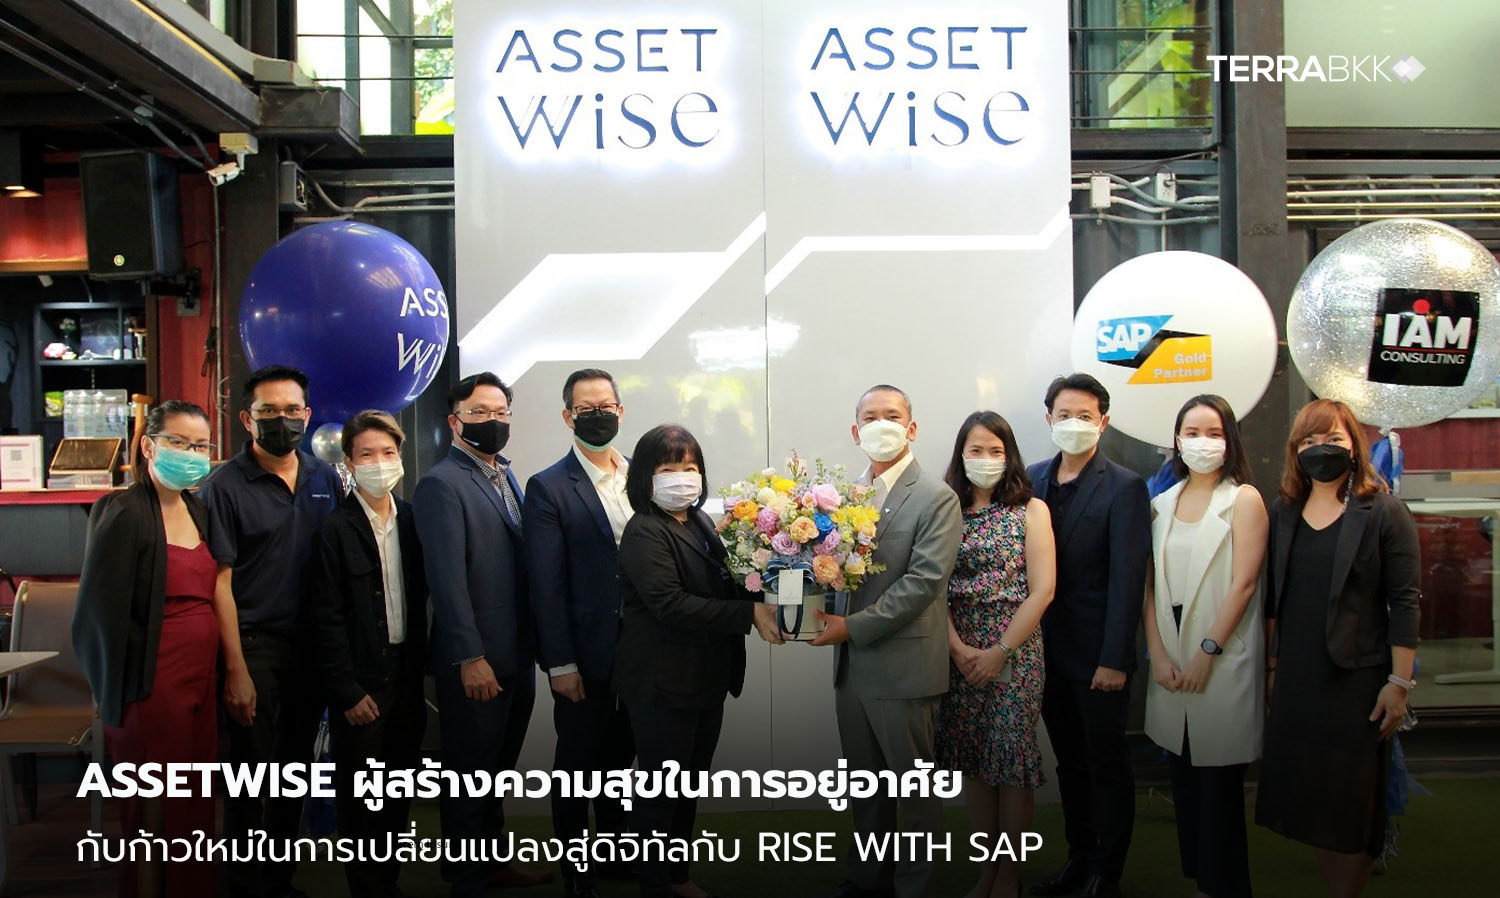 AssetWise ผู้สร้างความสุขในการอยู่อาศัย กับก้าวใหม่ในการเปลี่ยนแปลงสู่ดิจิทัลกับ RISE with SAP